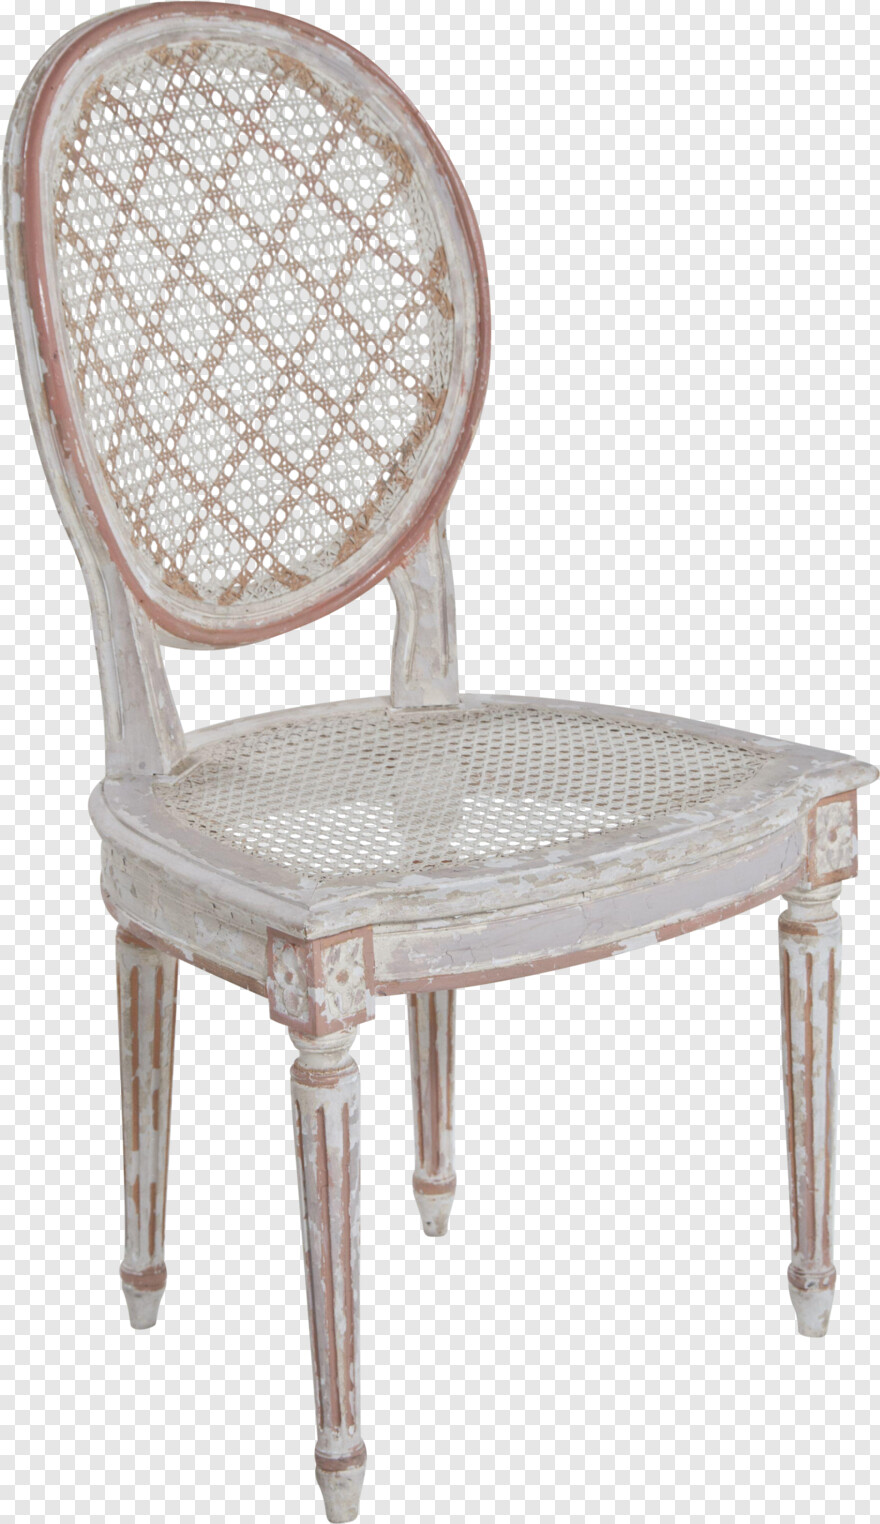 chair # 430752